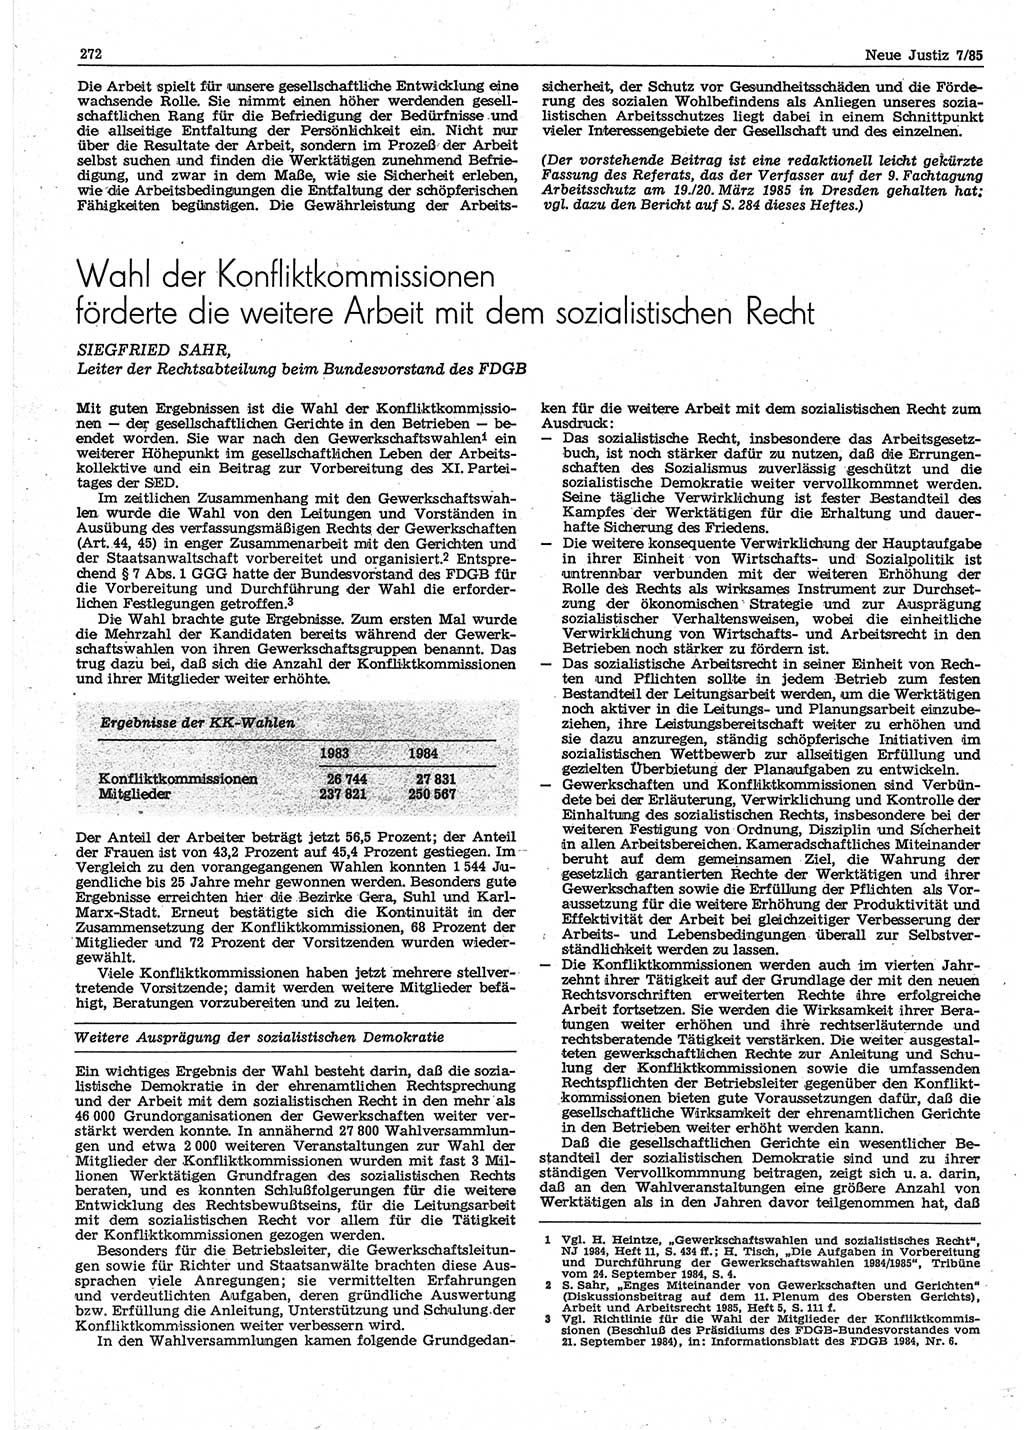 Neue Justiz (NJ), Zeitschrift für sozialistisches Recht und Gesetzlichkeit [Deutsche Demokratische Republik (DDR)], 39. Jahrgang 1985, Seite 272 (NJ DDR 1985, S. 272)